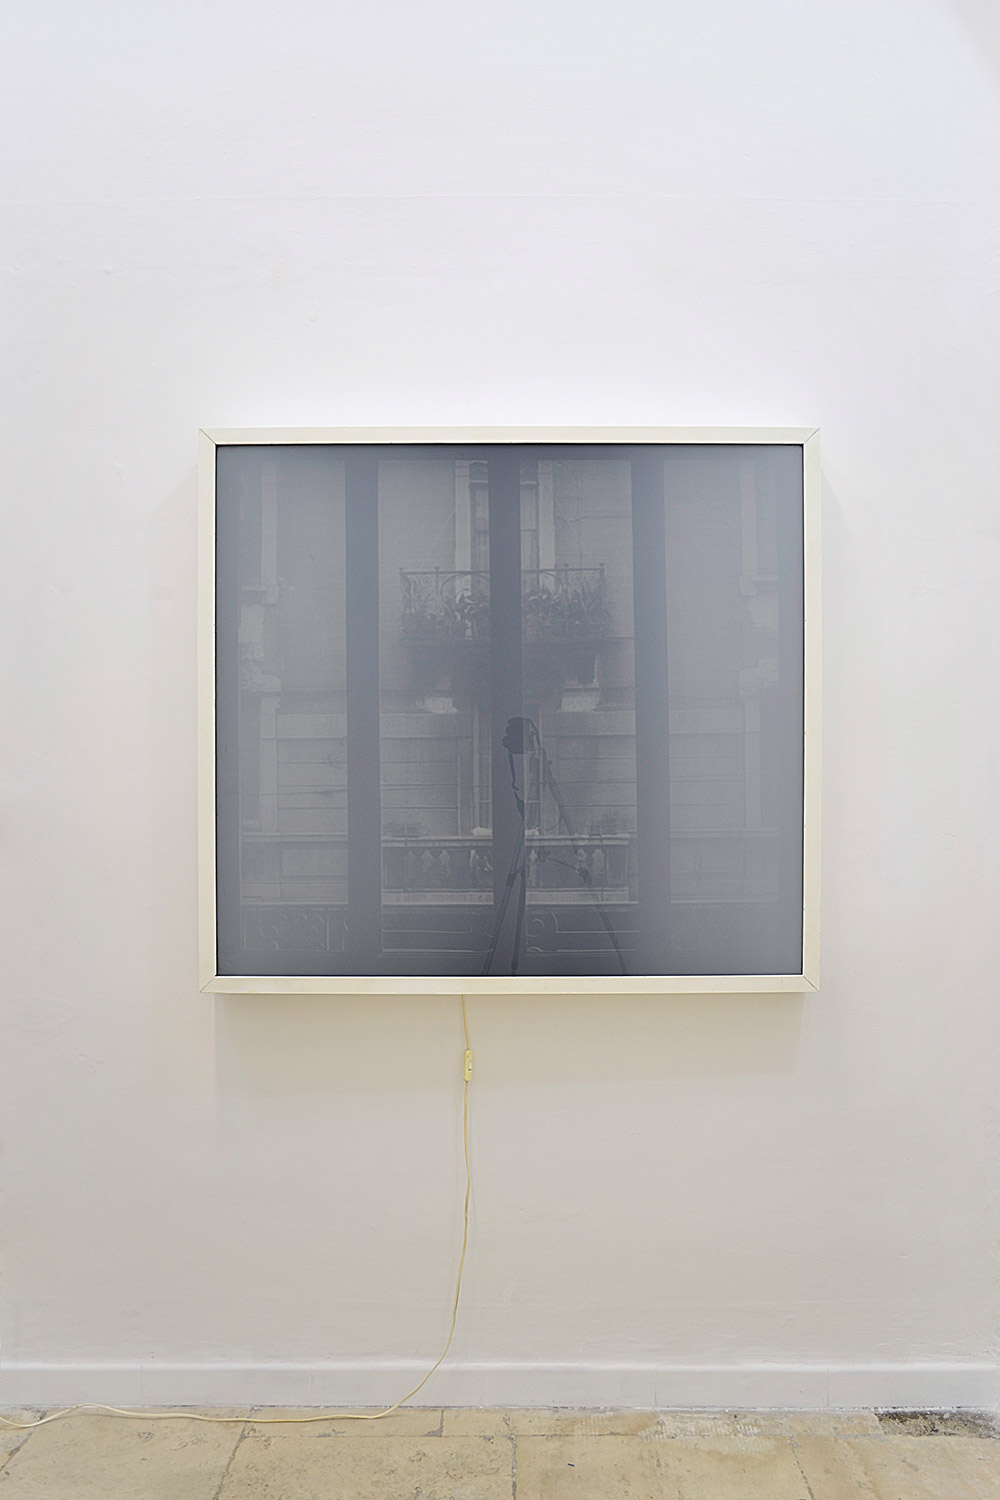 Antonio Trotta, Finestra su vetro, 1972, light box, emulsione su vetro, 120x120x12 cm (OFF)